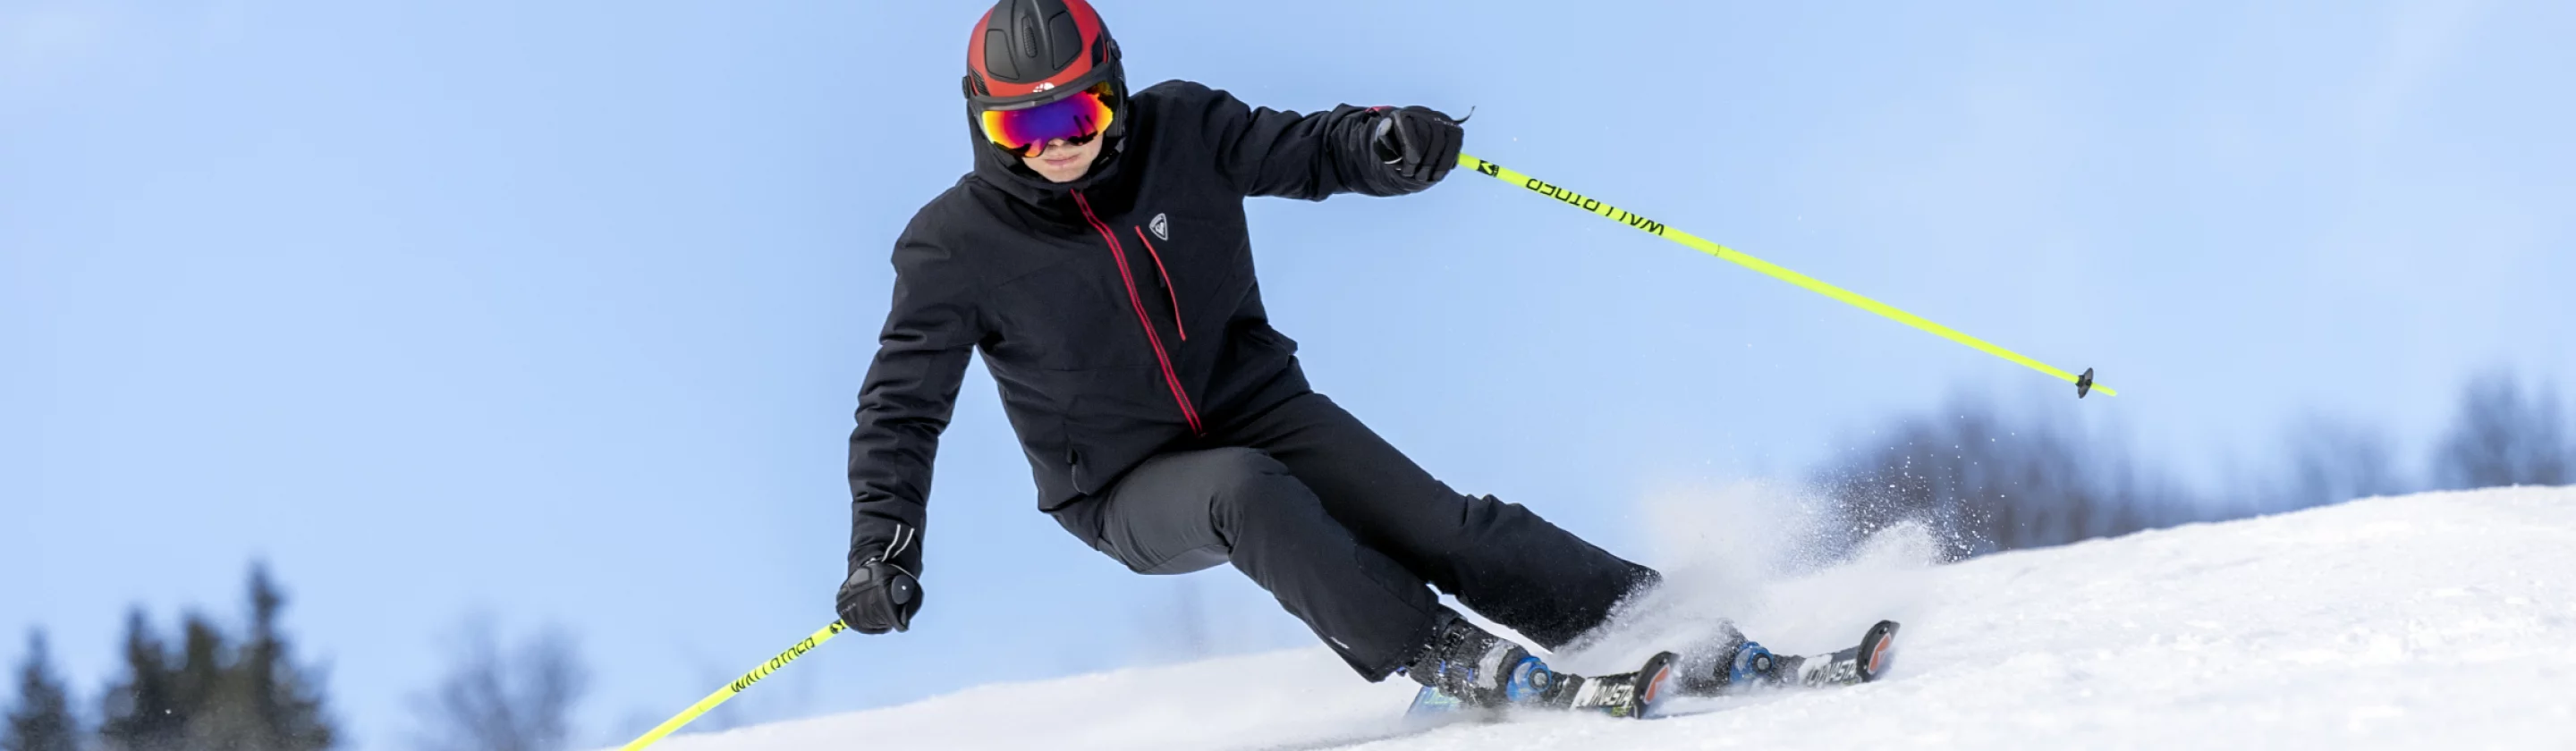 Les accessoires indispensables pour le ski 